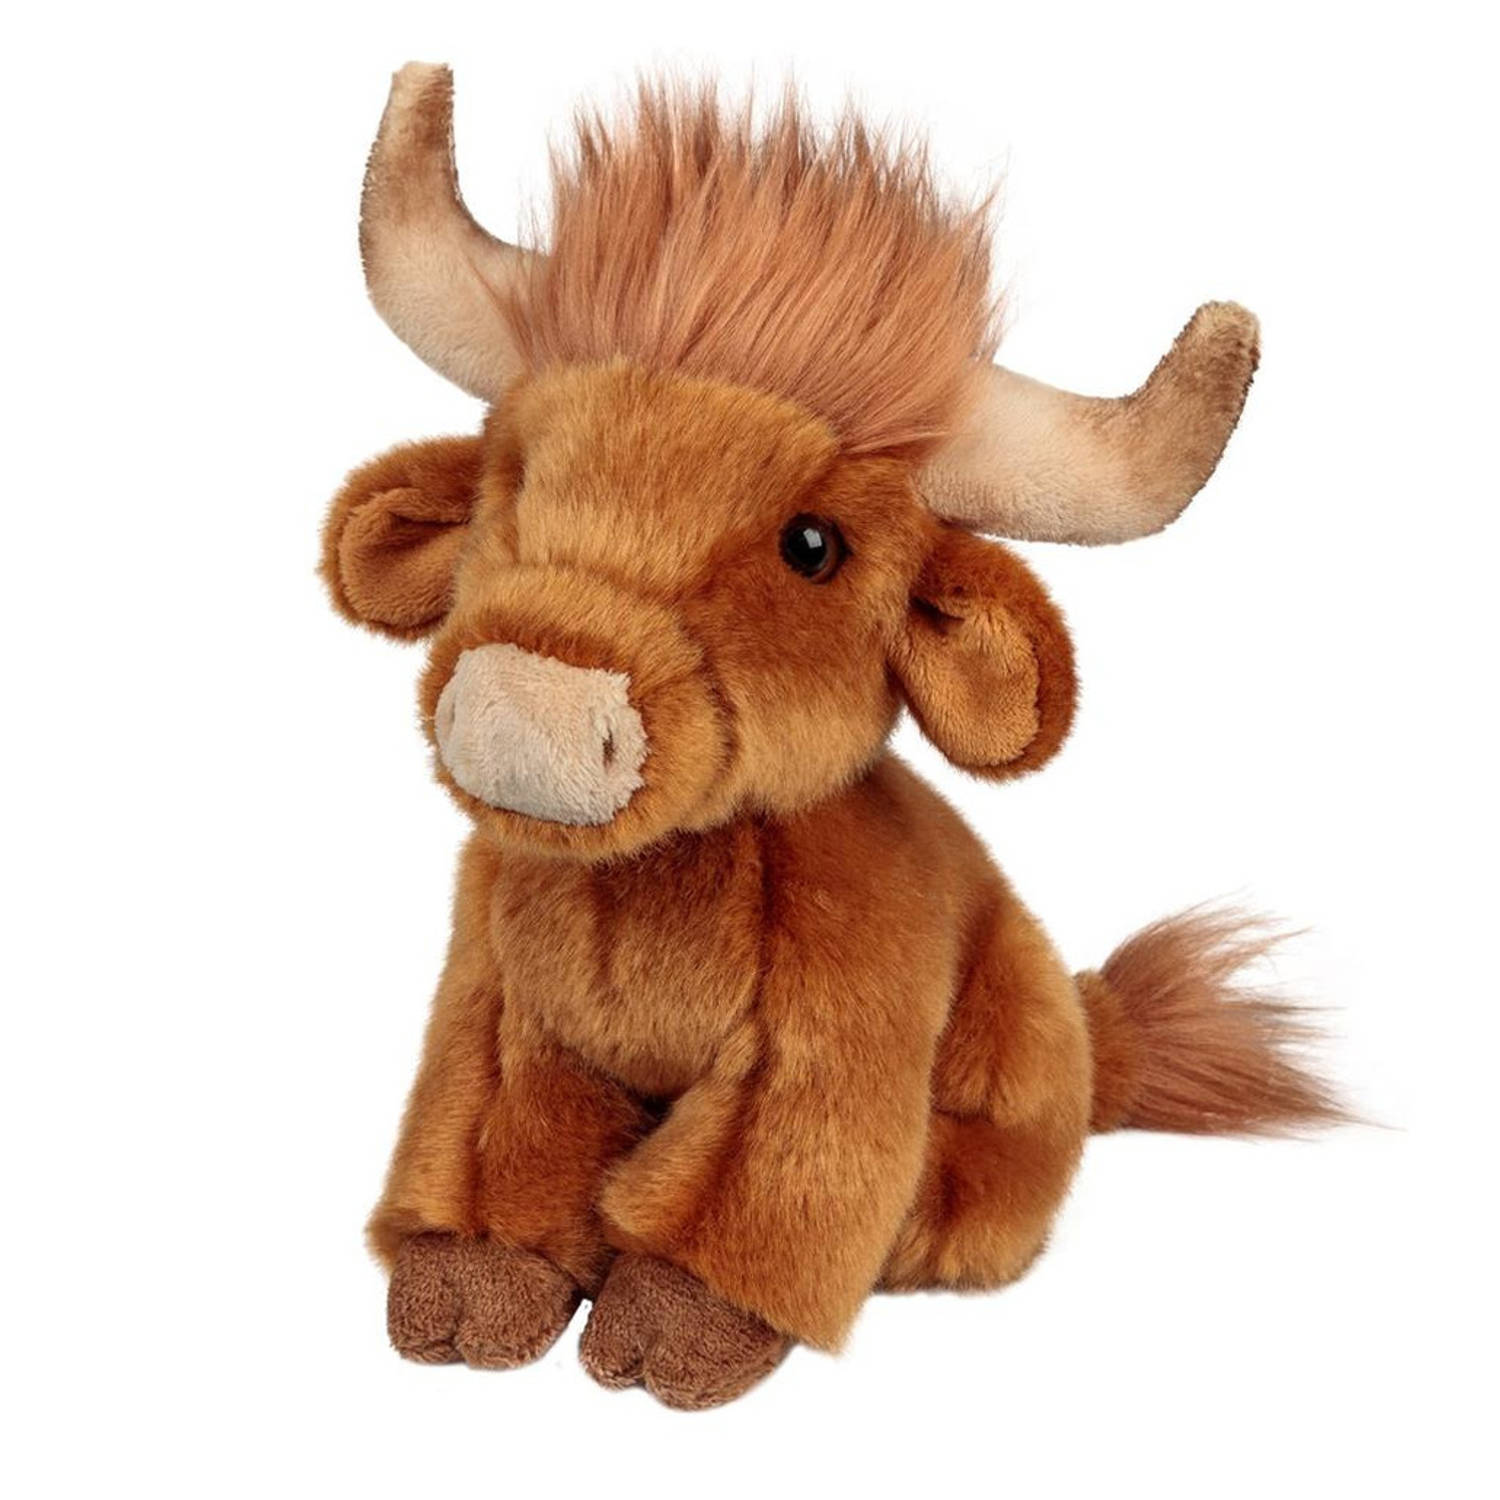 Pluche knuffeldier Schotse hooglander koe 15 cm - Boerderij dieren speelgoed knuffels